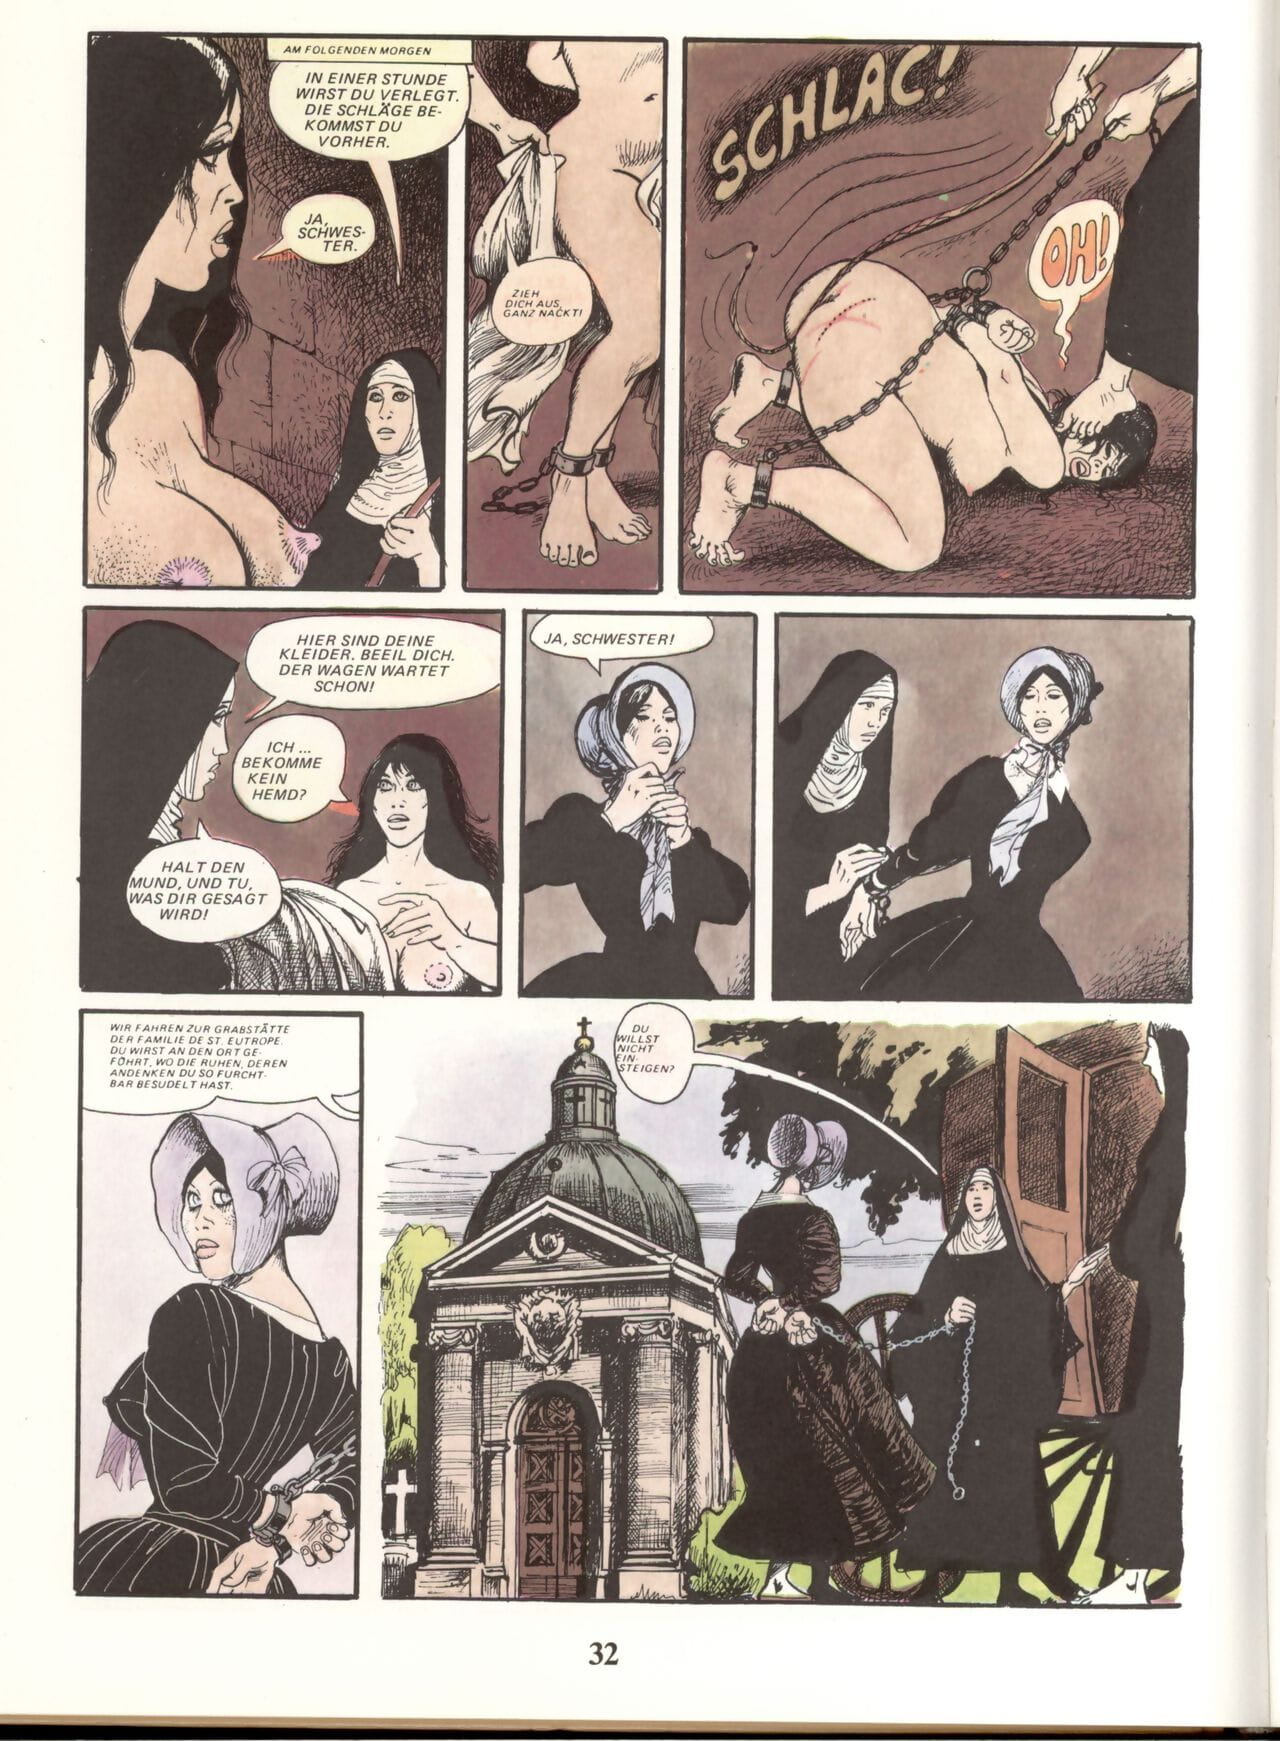 Marie Gabrielle De San eutropo #02 parte 2 page 1